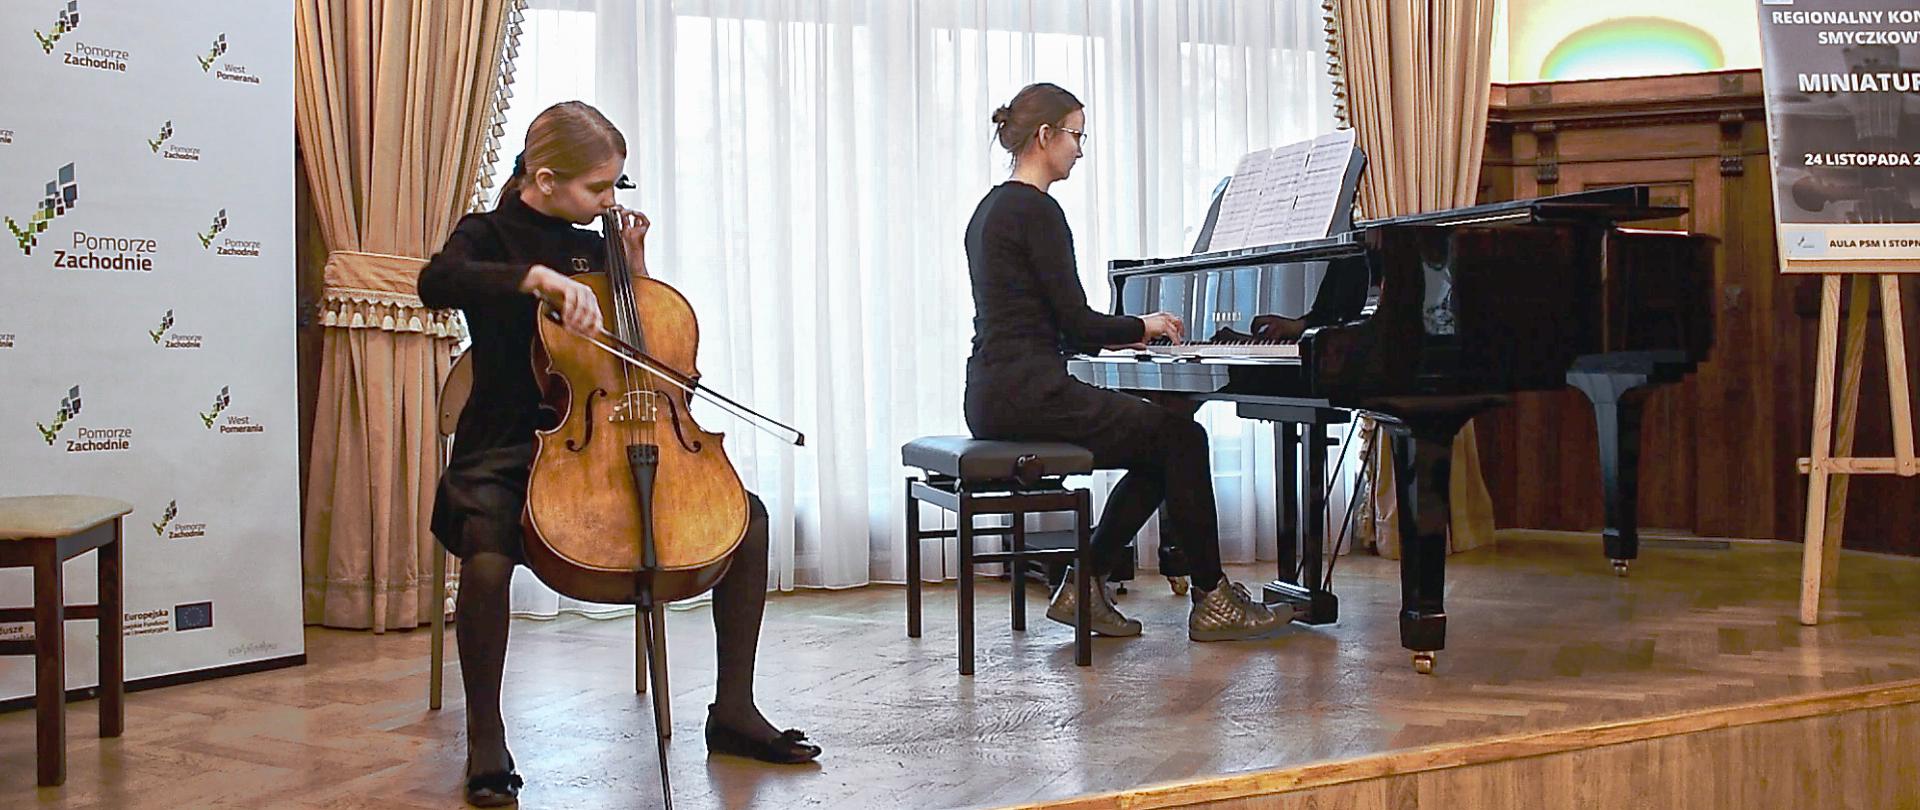 Zdjęcie przedstawia scenę, w tle okno. Na scenie po lewej stronie uczennica grająca na wiolonczeli, po prawej stronie nauczycielka grająca na fortepianie.